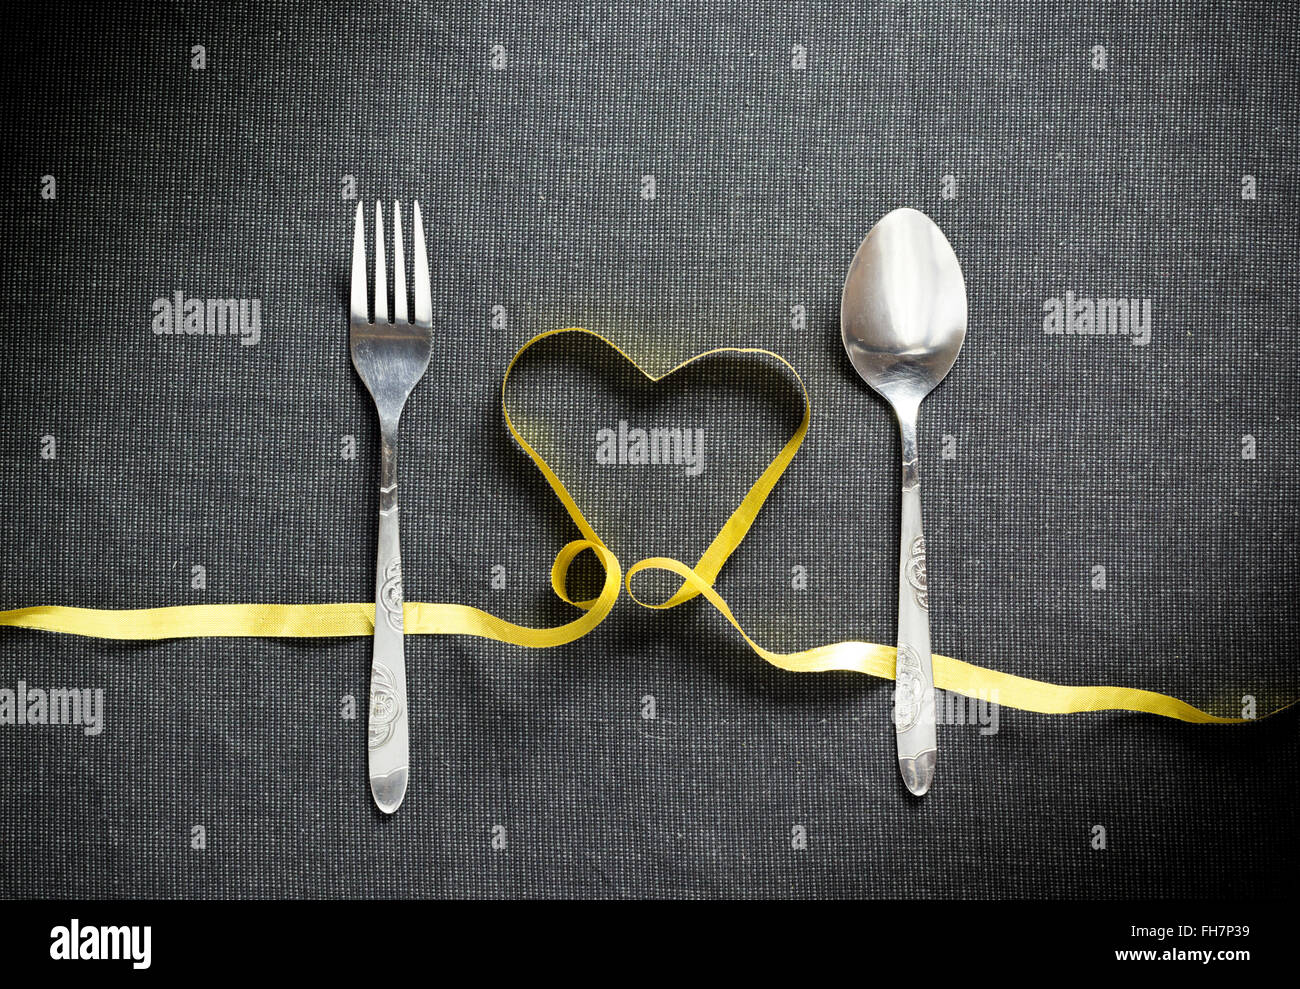 Fourchette et cuillère en forme de coeur fait de ruban jaune sur fond texturé noir Banque D'Images